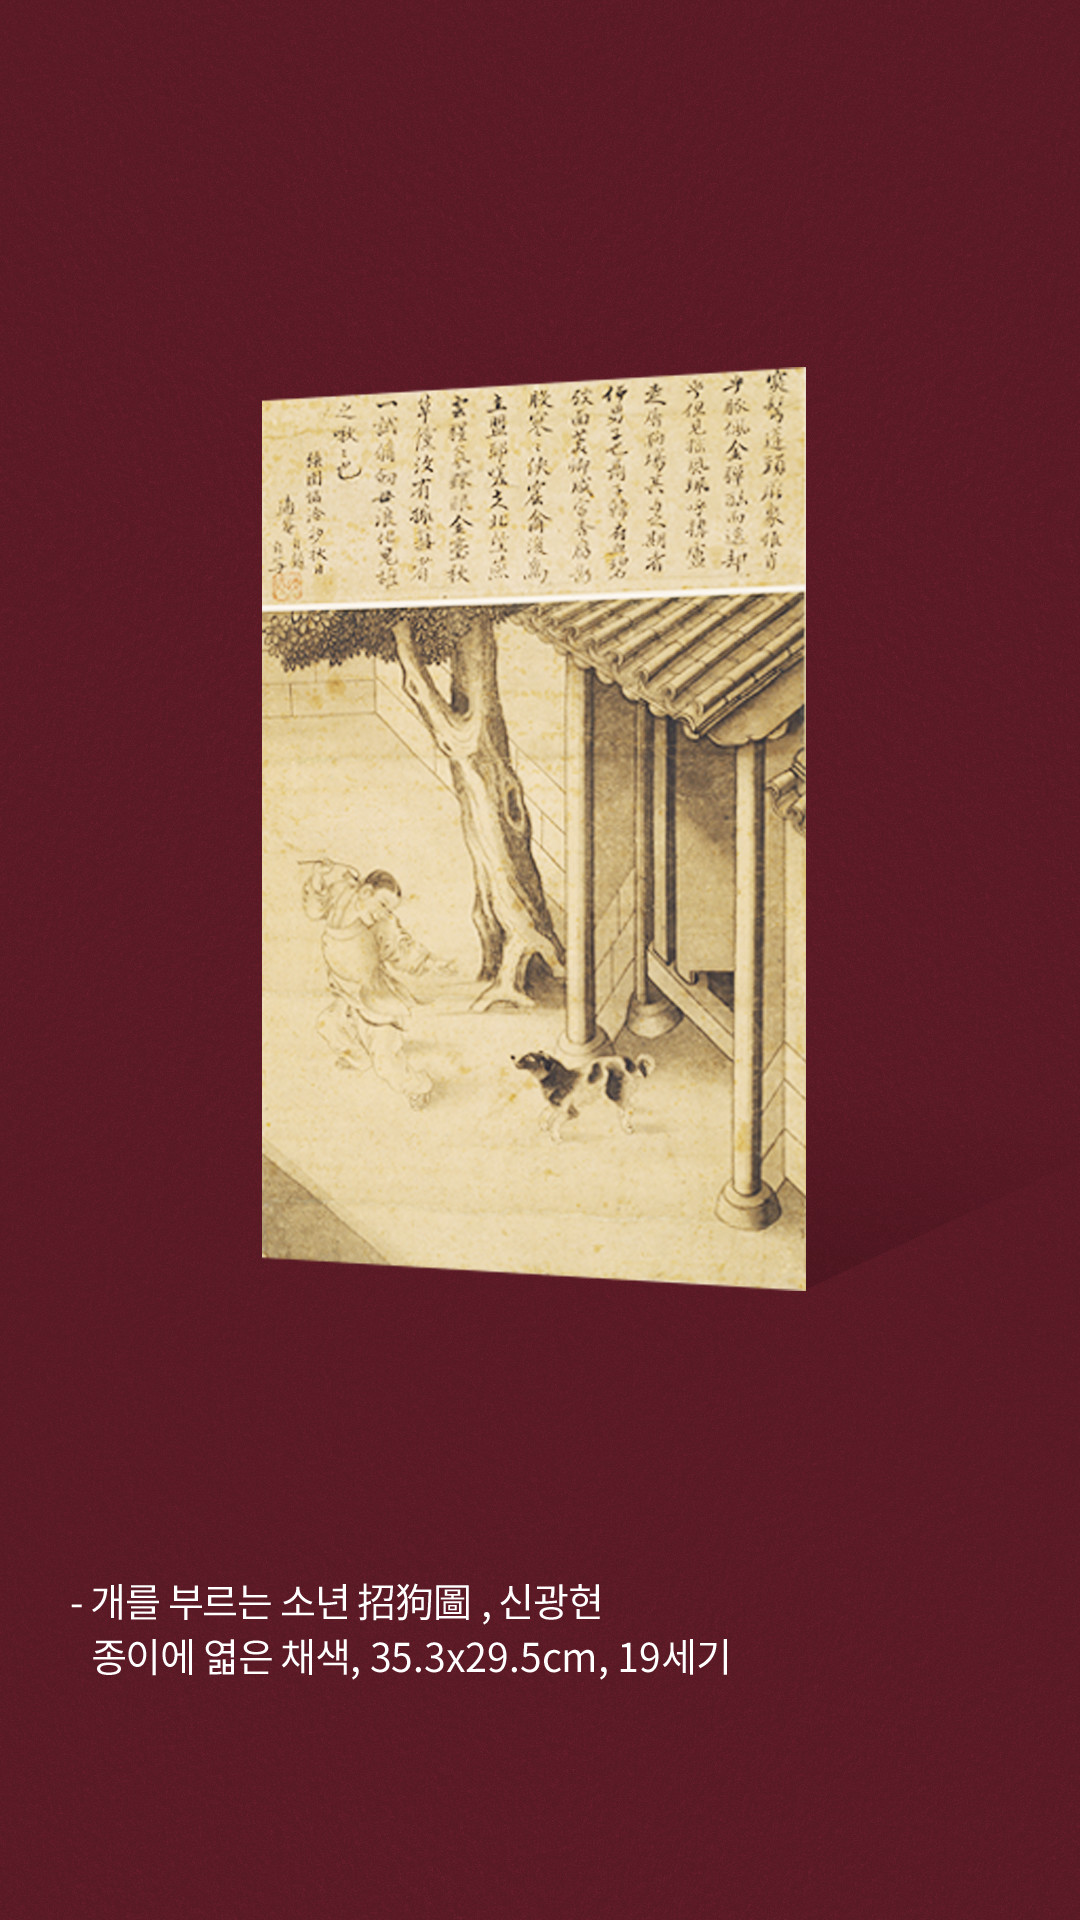 개를 부르는 소년 招狗圖, 신광현 종이에 엷은 채색, 35.3x29.5cm, 19세기